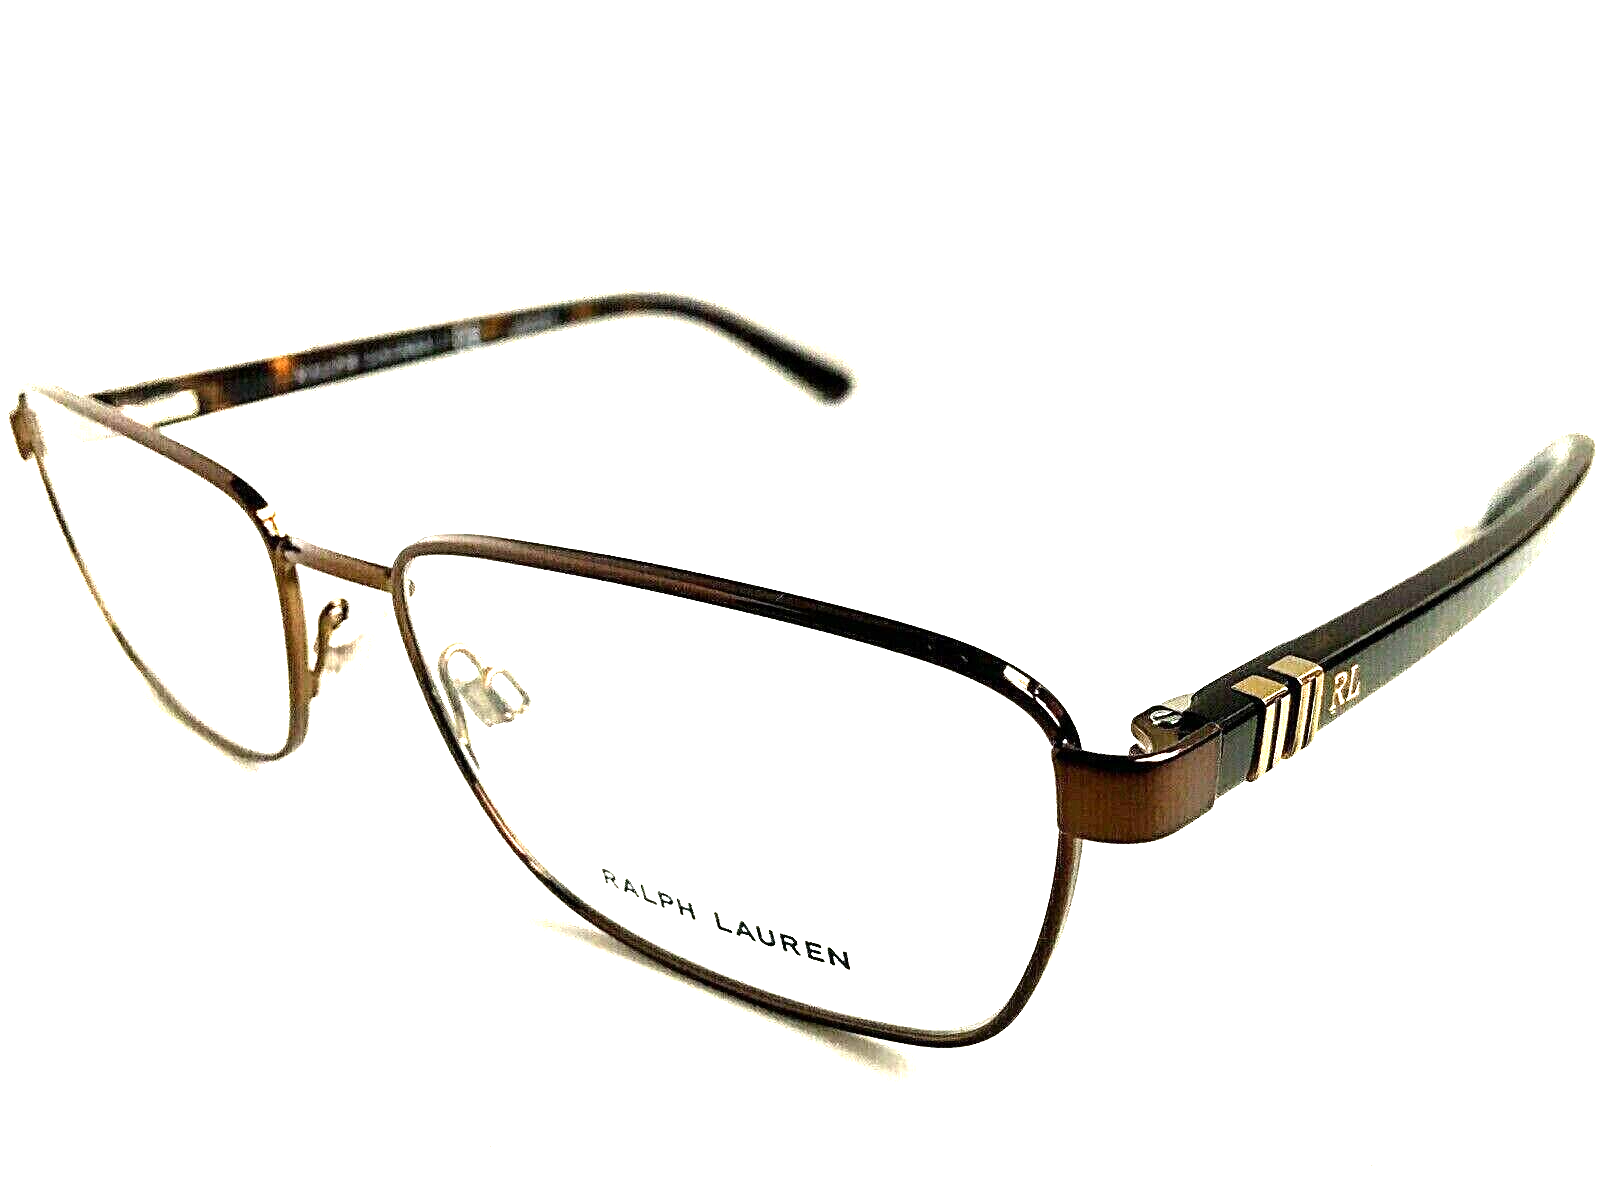 Primary image for New Ralph Lauren PH 4911 1390 55mm Rectangular Men's Eyeglasses Frame